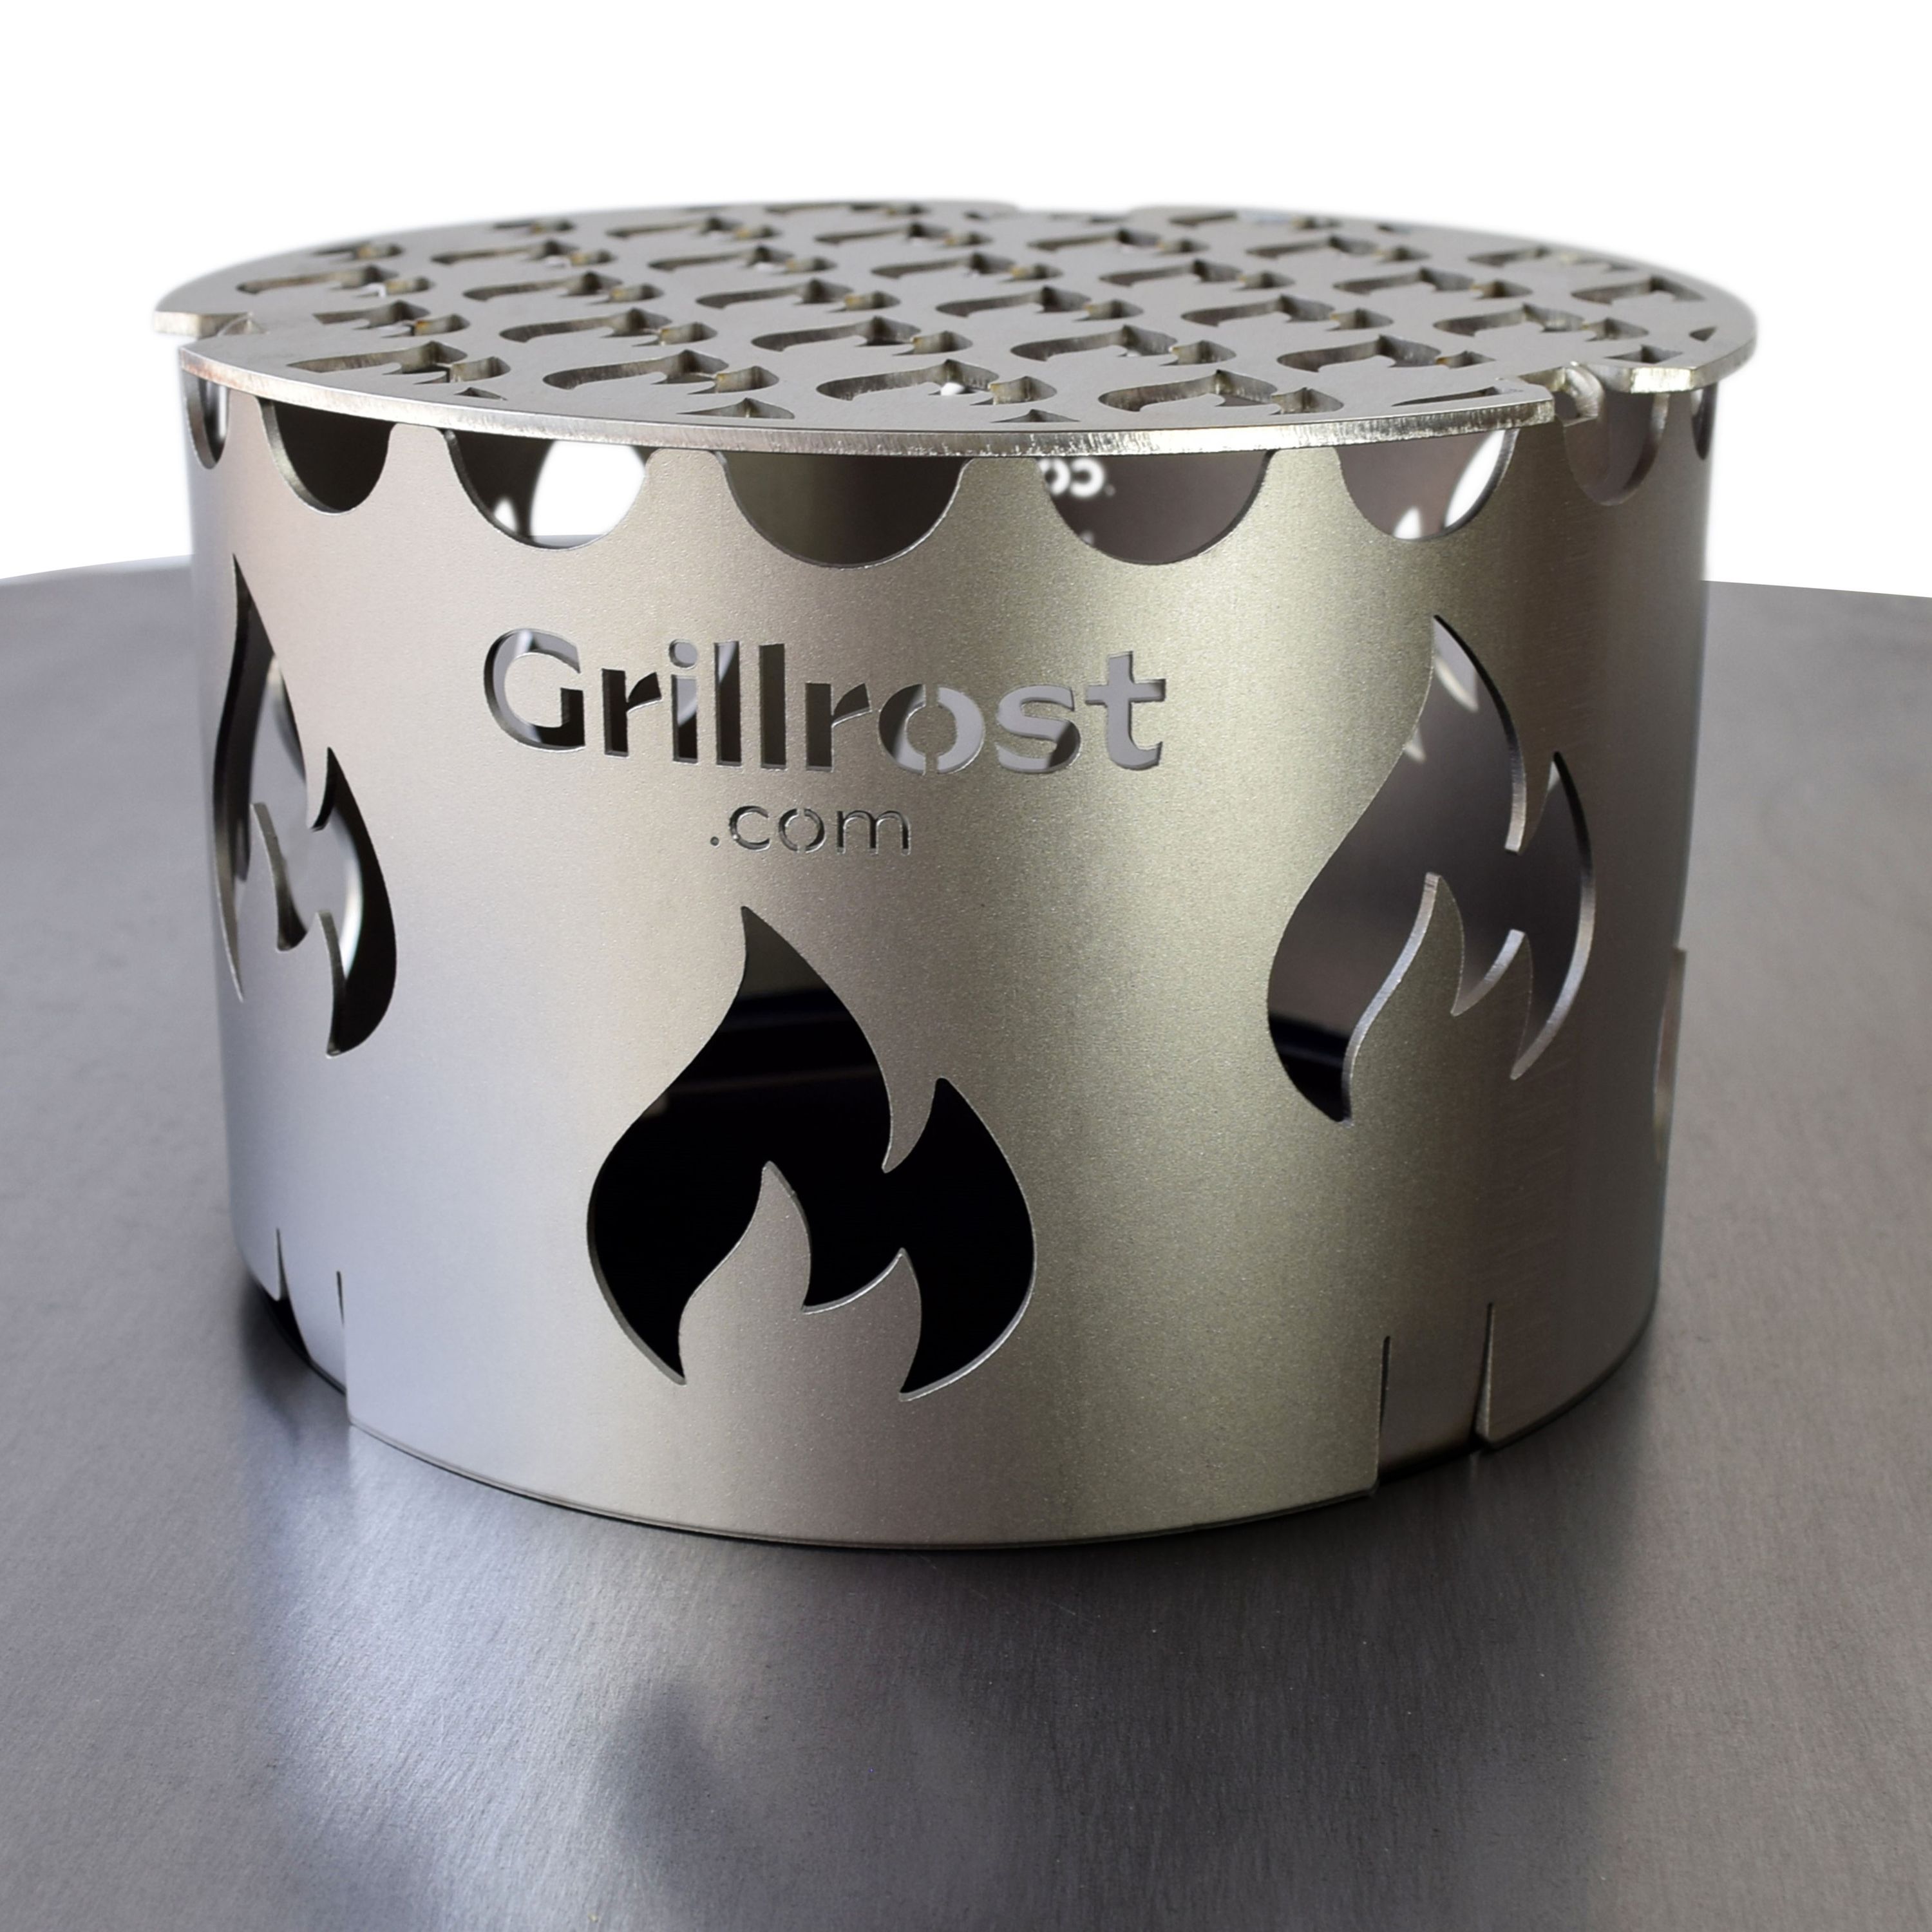 Edelstahl Wok-Aufsatz für Feuerplatten zum Wok-Grillen und Einfallschutz